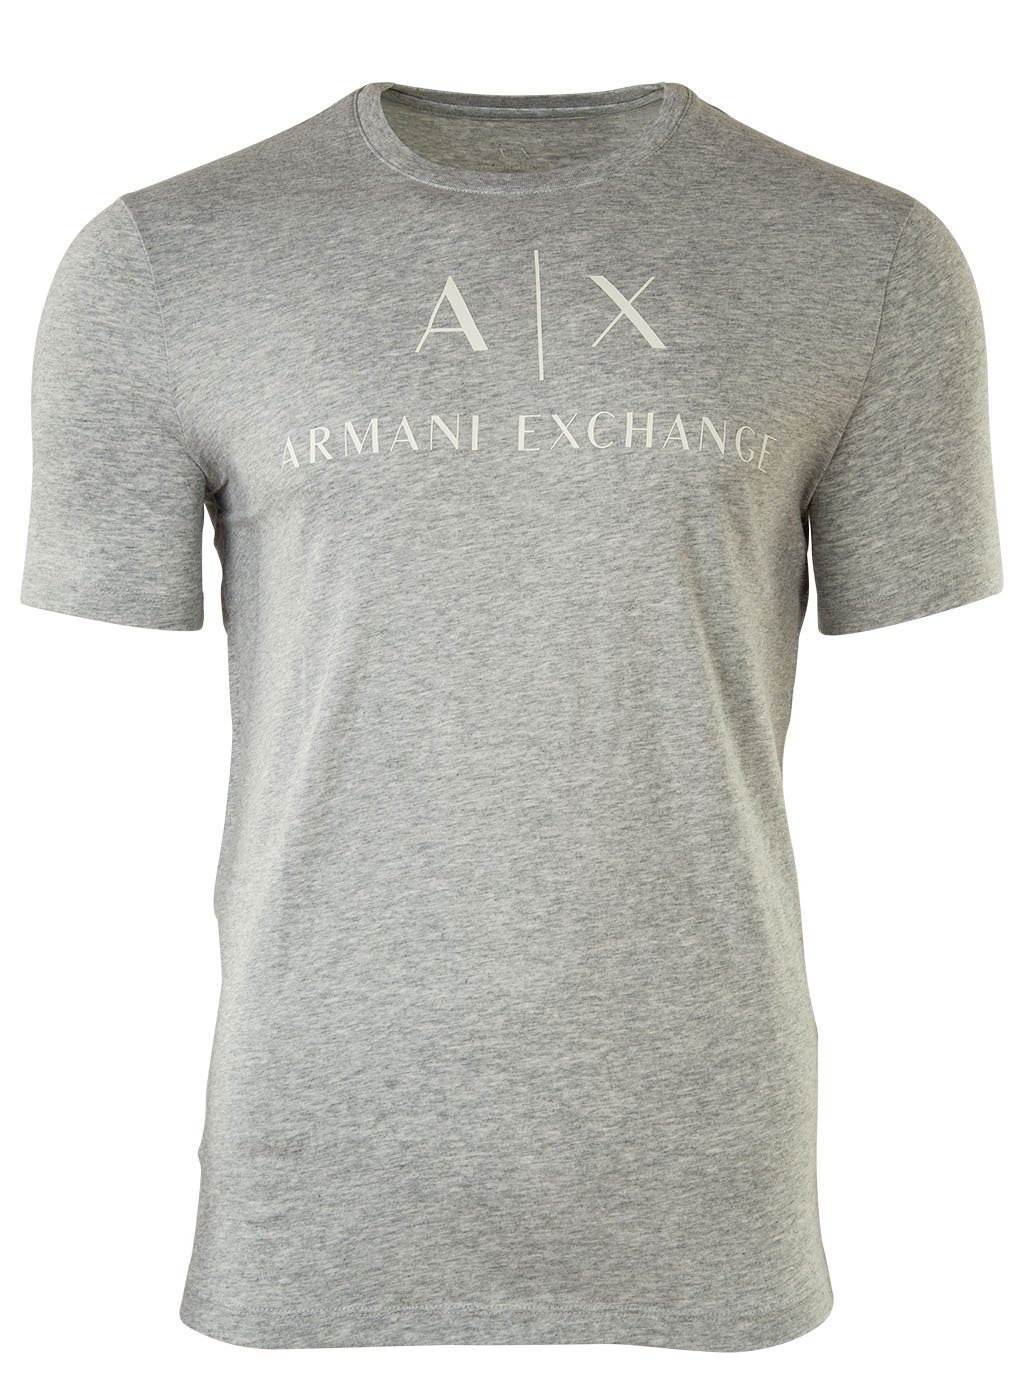 ARMANI EXCHANGE T-Shirt Herren T-Shirt - Schriftzug, Rundhals, Cotton